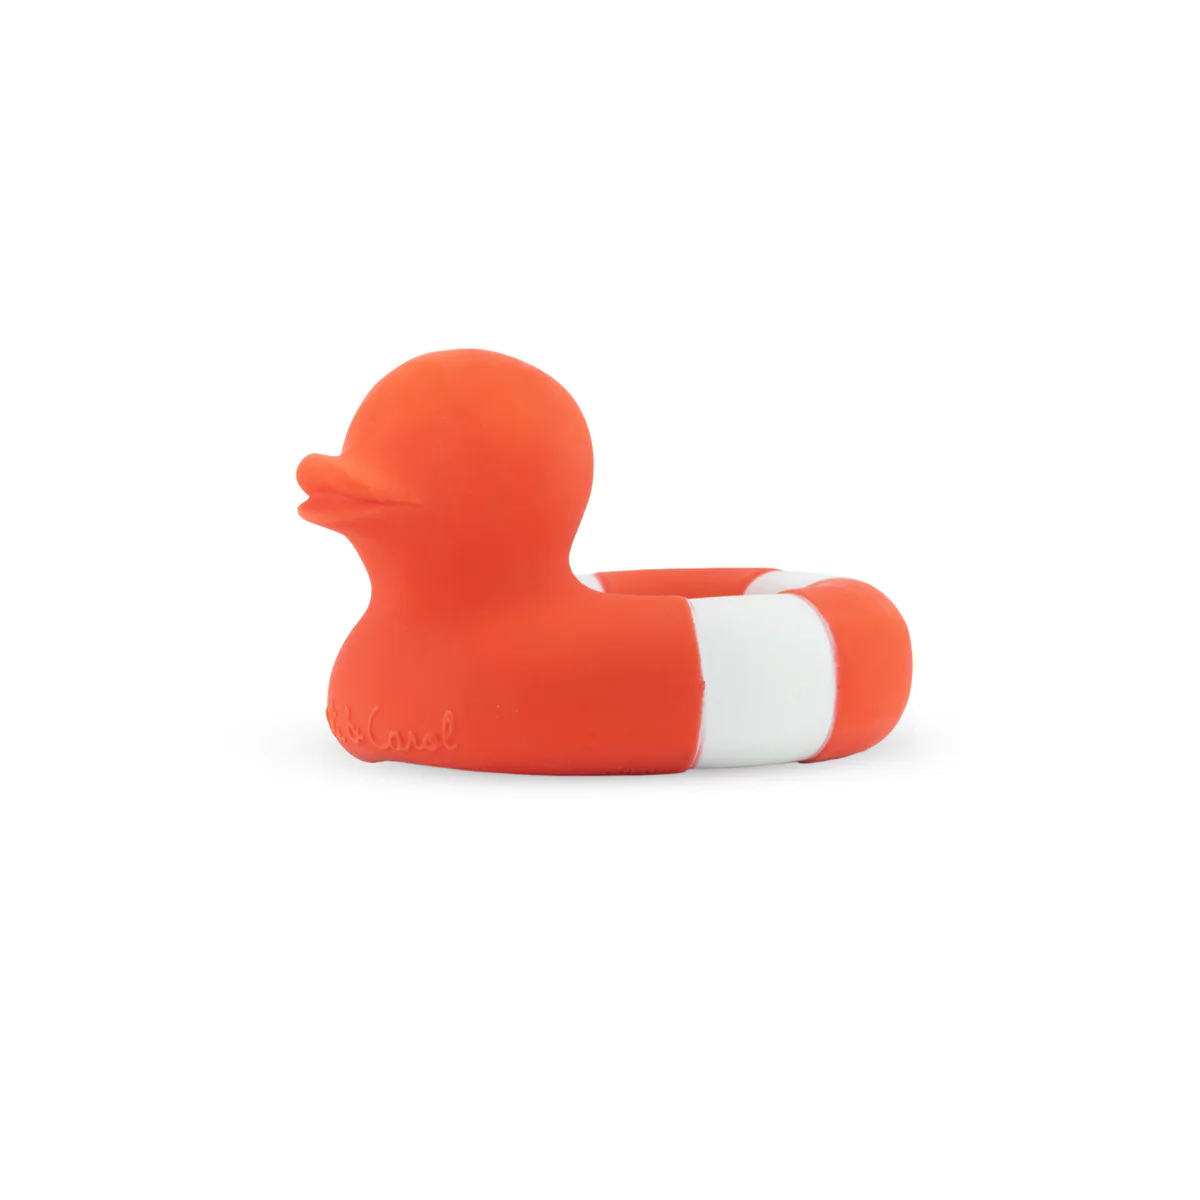 Floatie Duck - Red